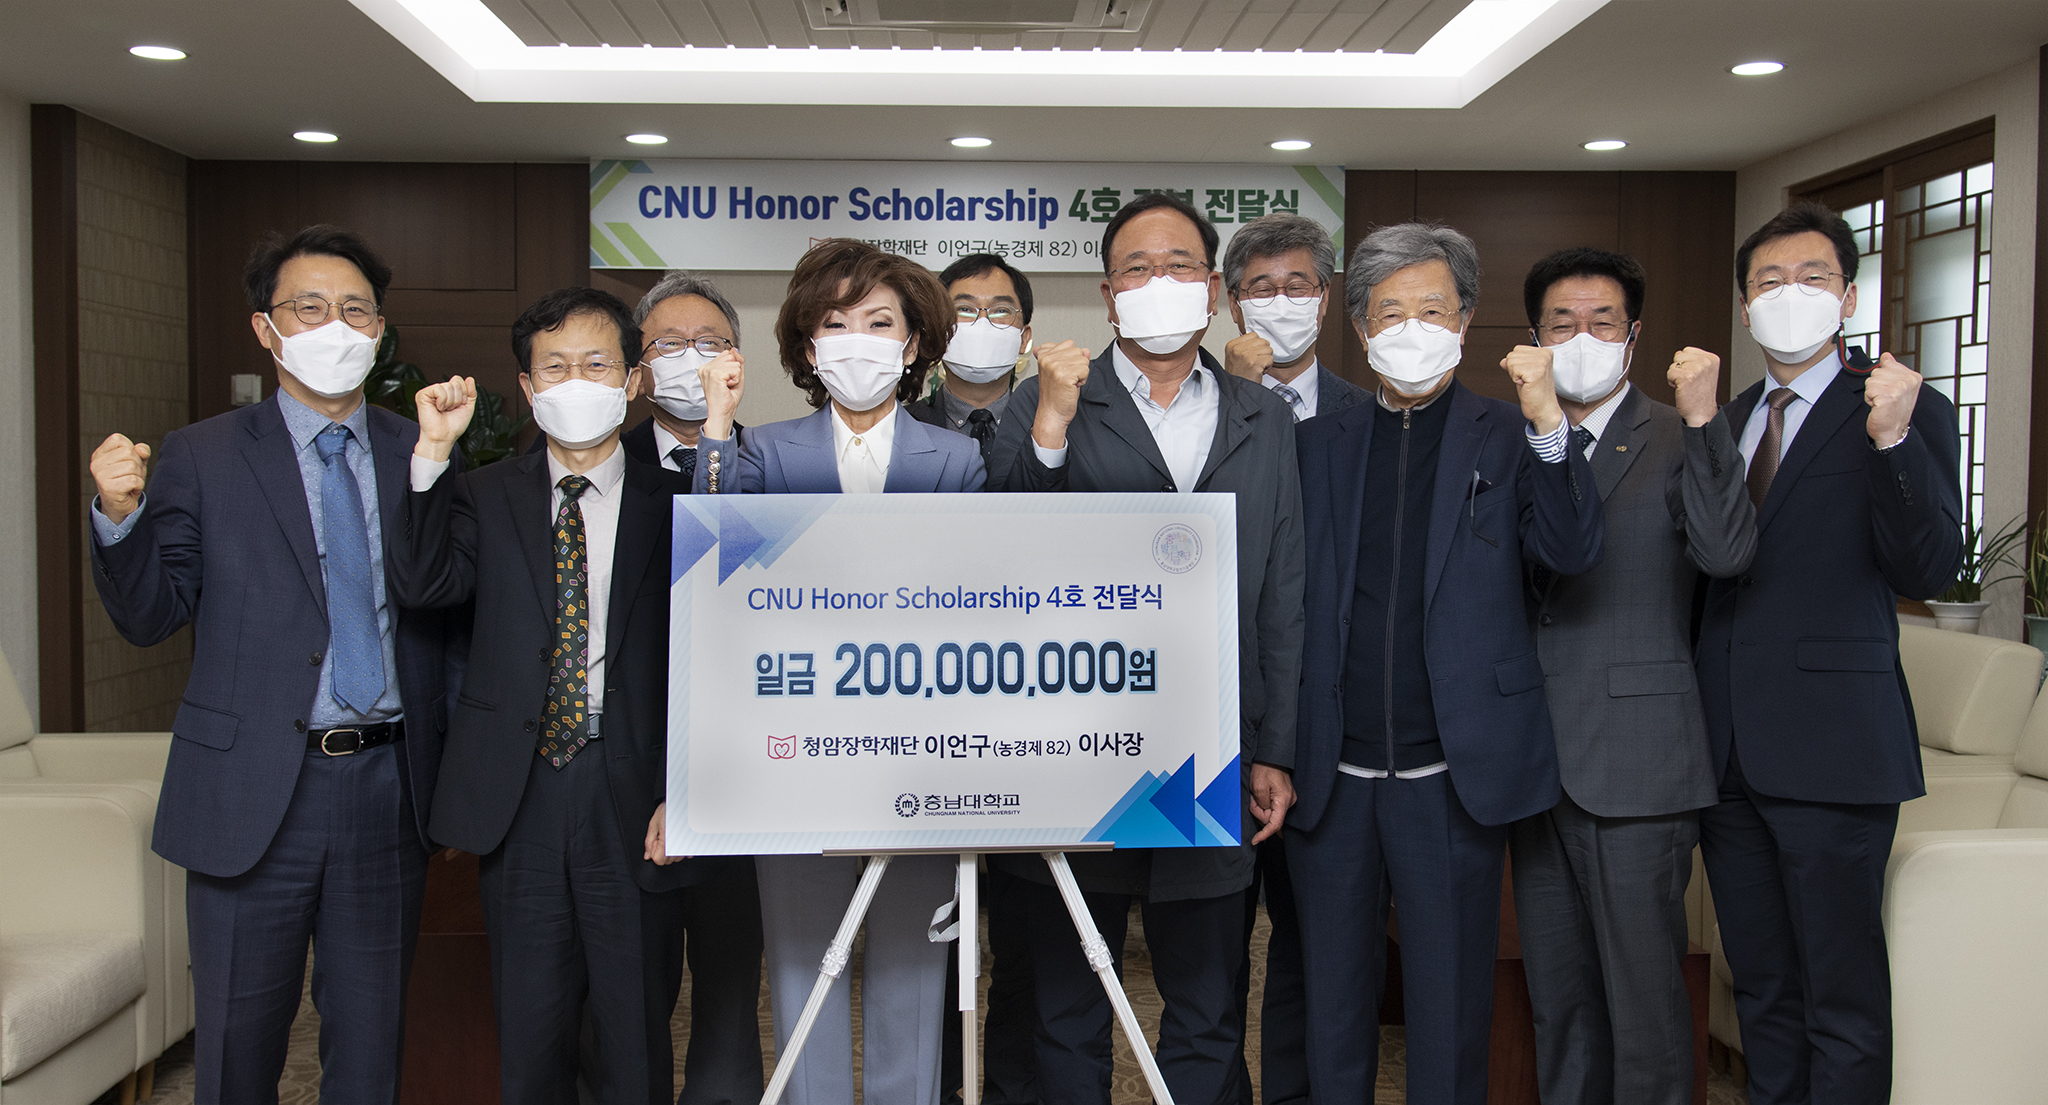 청암장학재단 이언구 이사장, ‘CNU Honor Scholarship’ 장학기금 2억원 기부 사진1